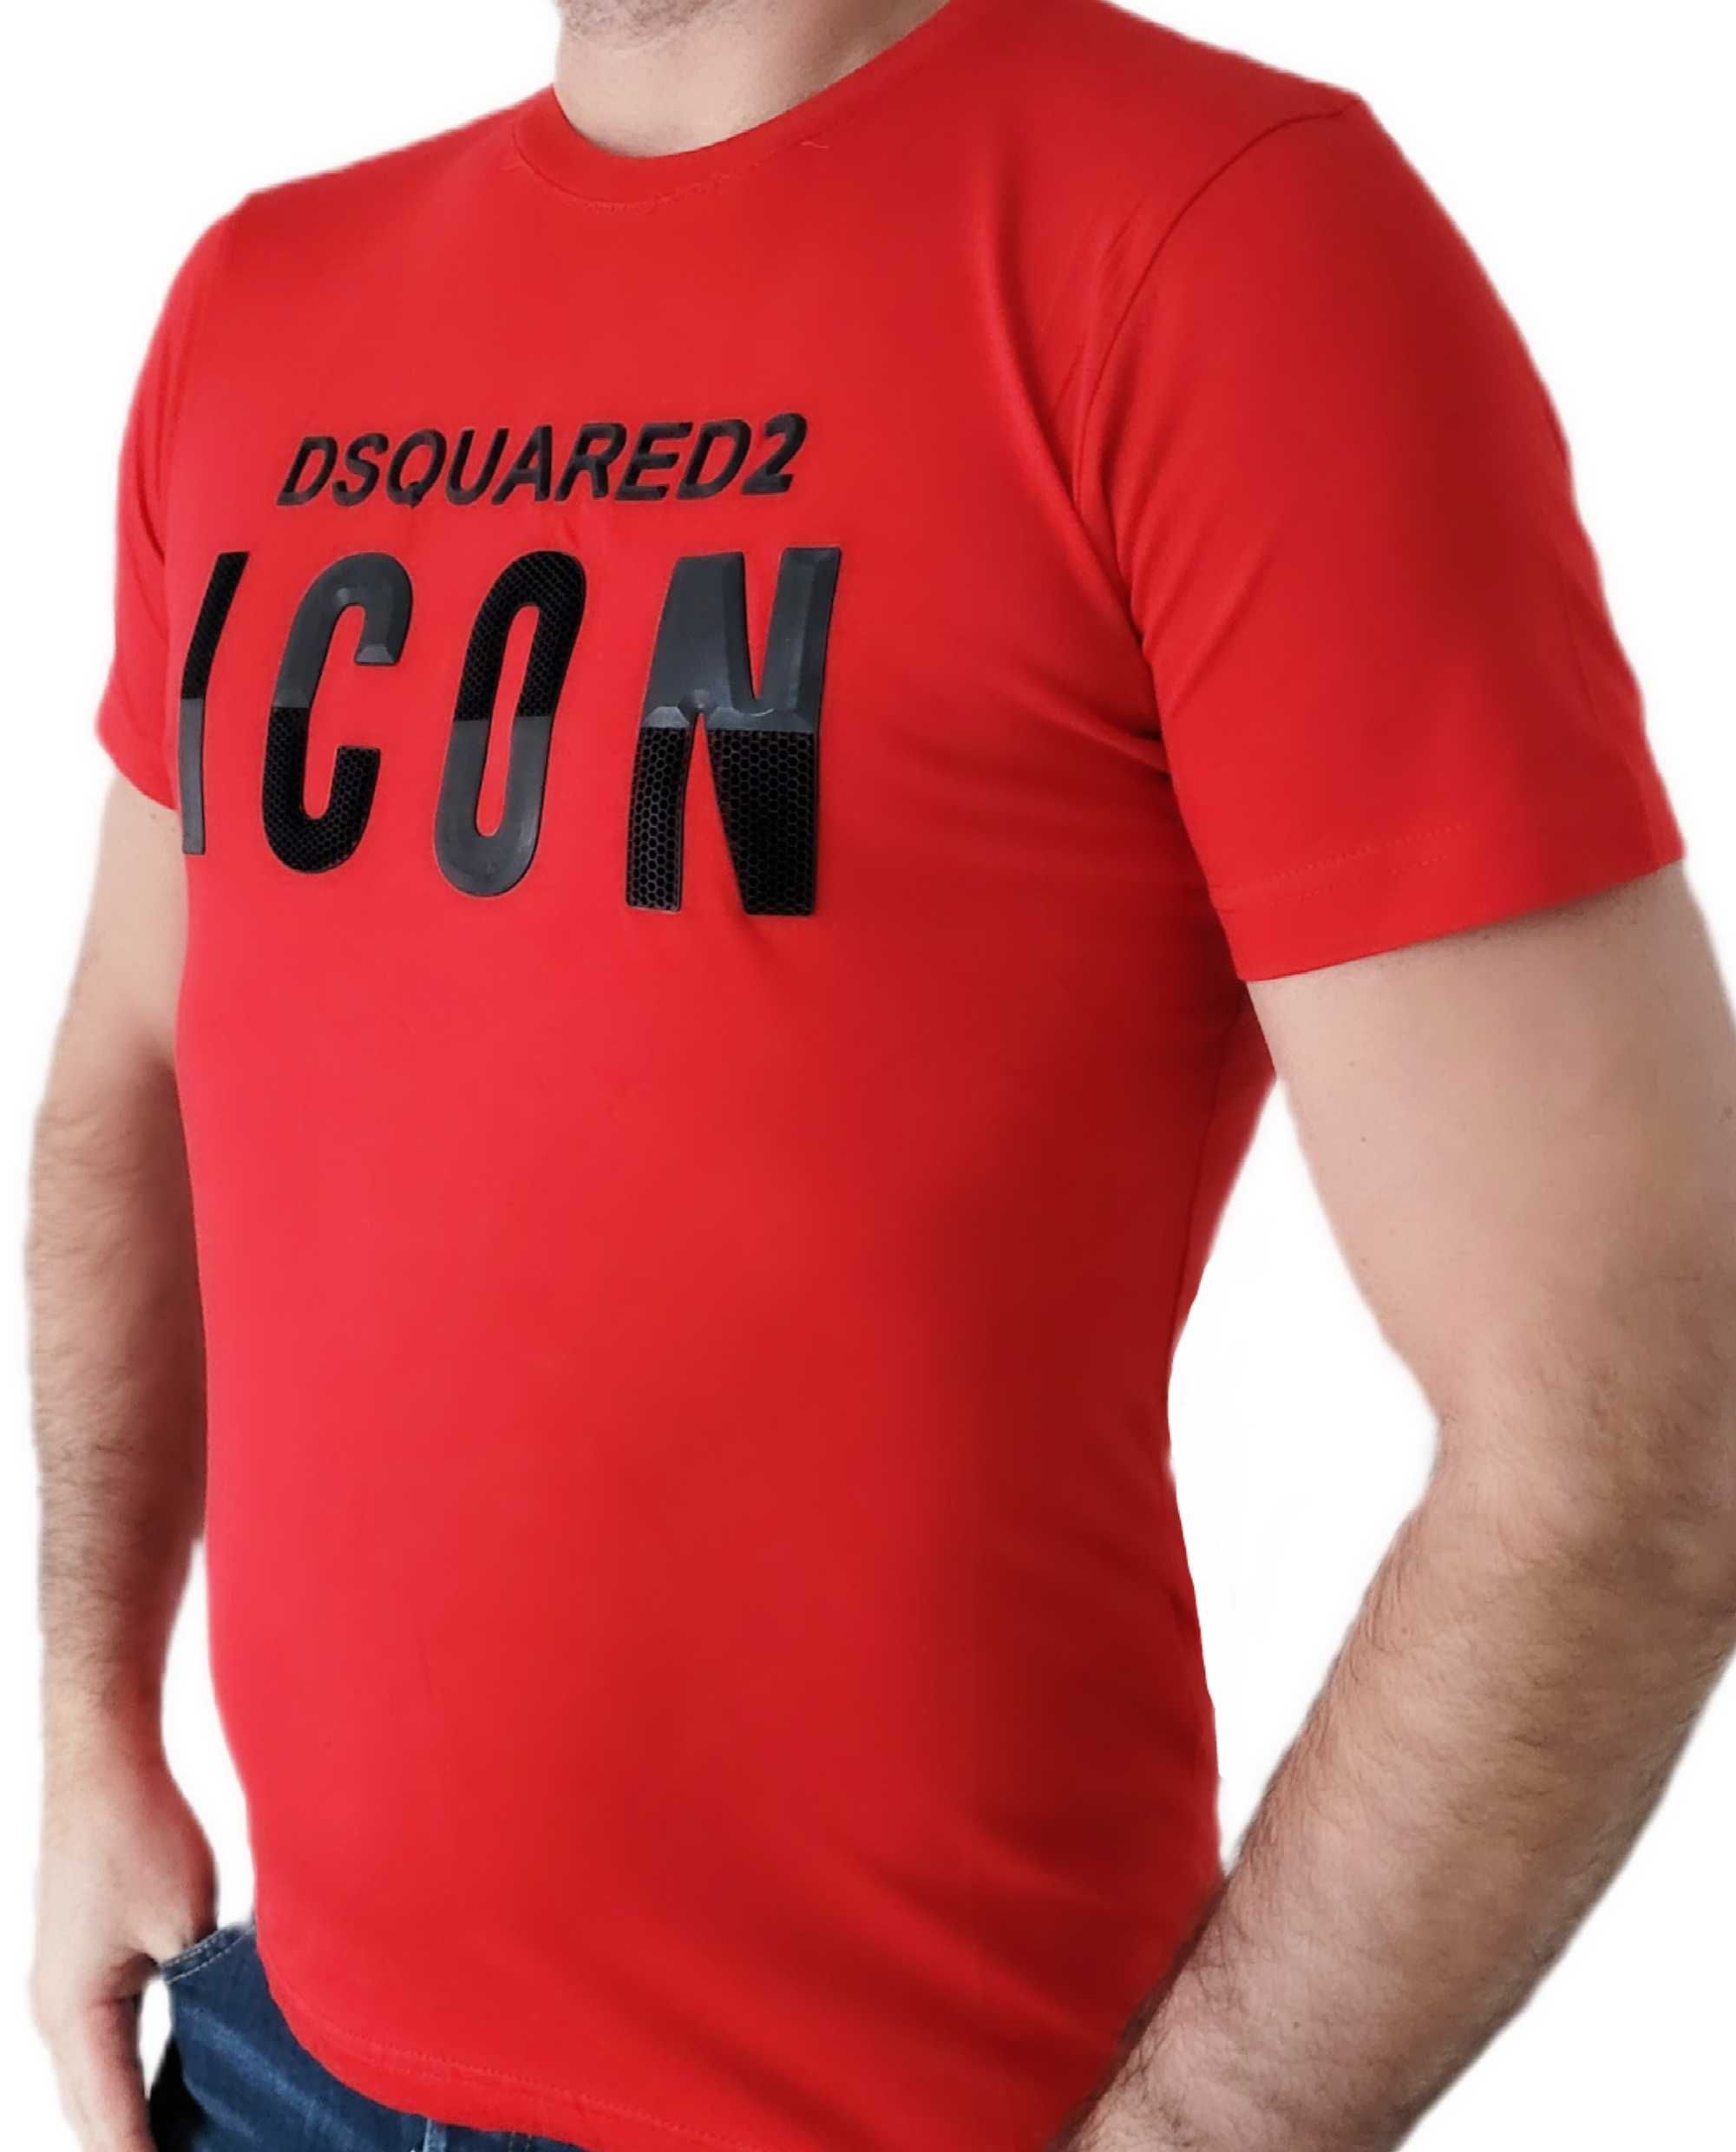 ICON T-shirt Koszulka Dsquared2 czerwona